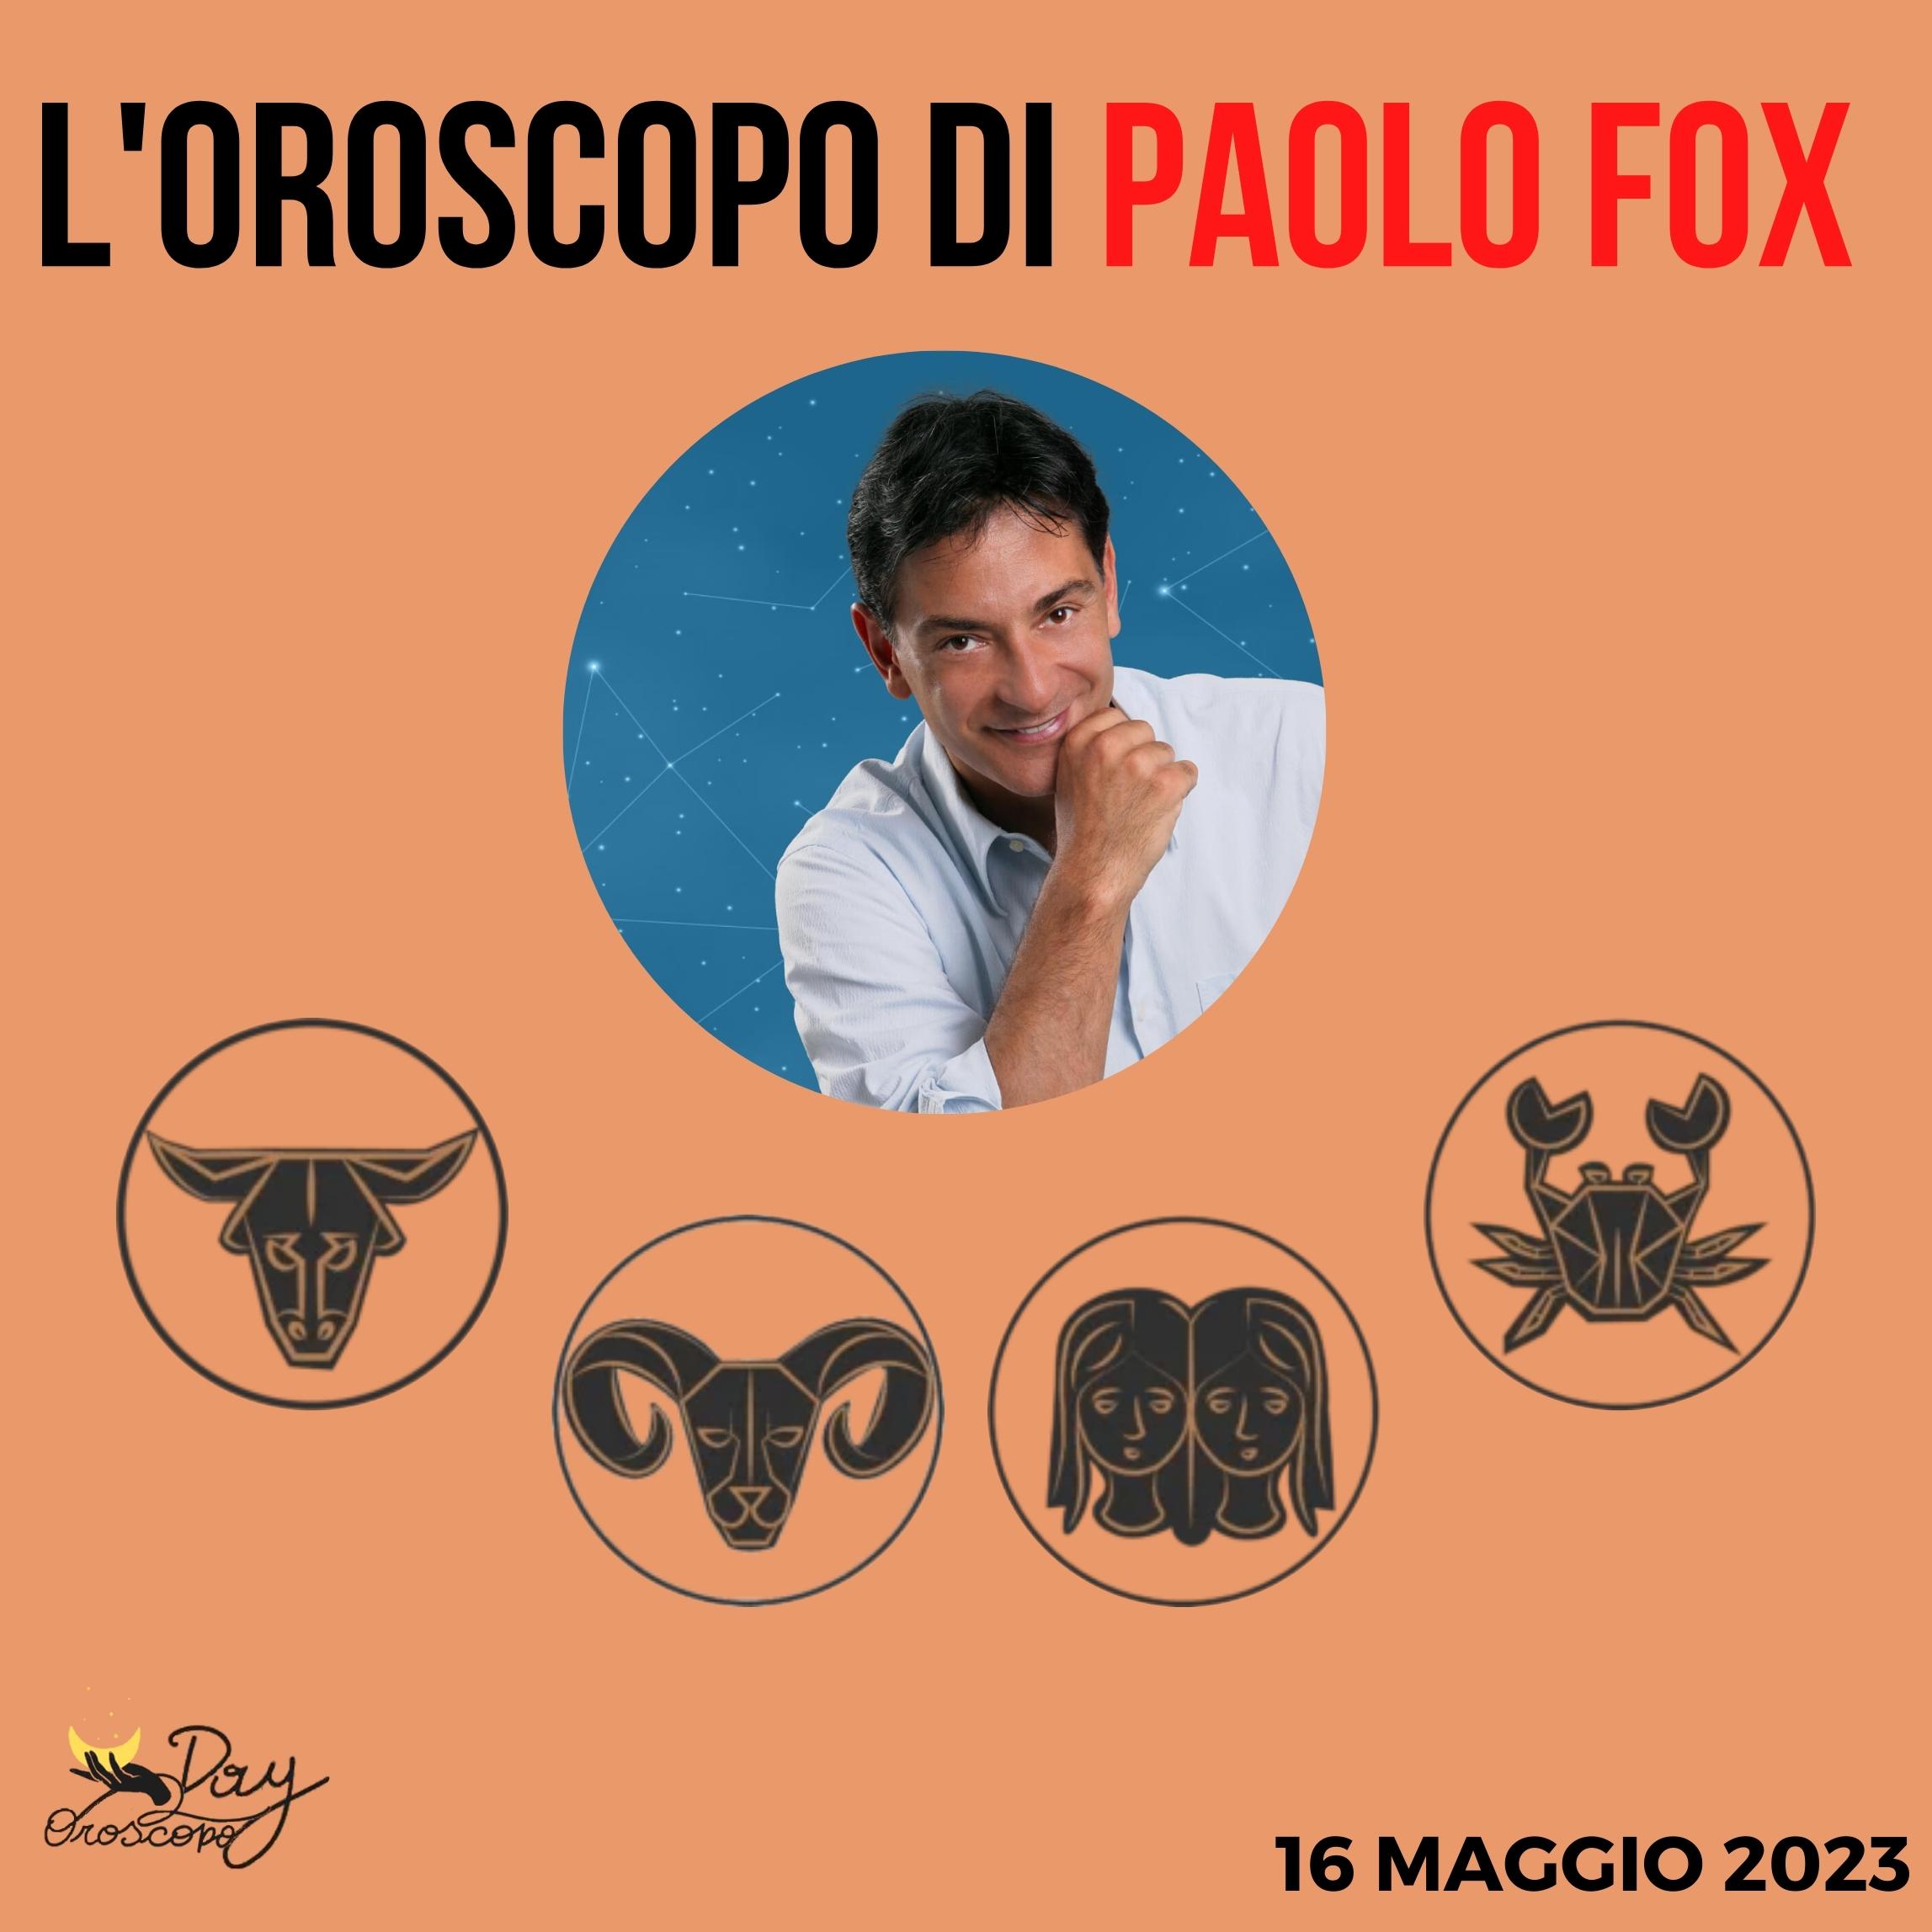 Oroscopo oggi domani Paolo Fox 16 maggio Toro Ariete Gemelli Cancro